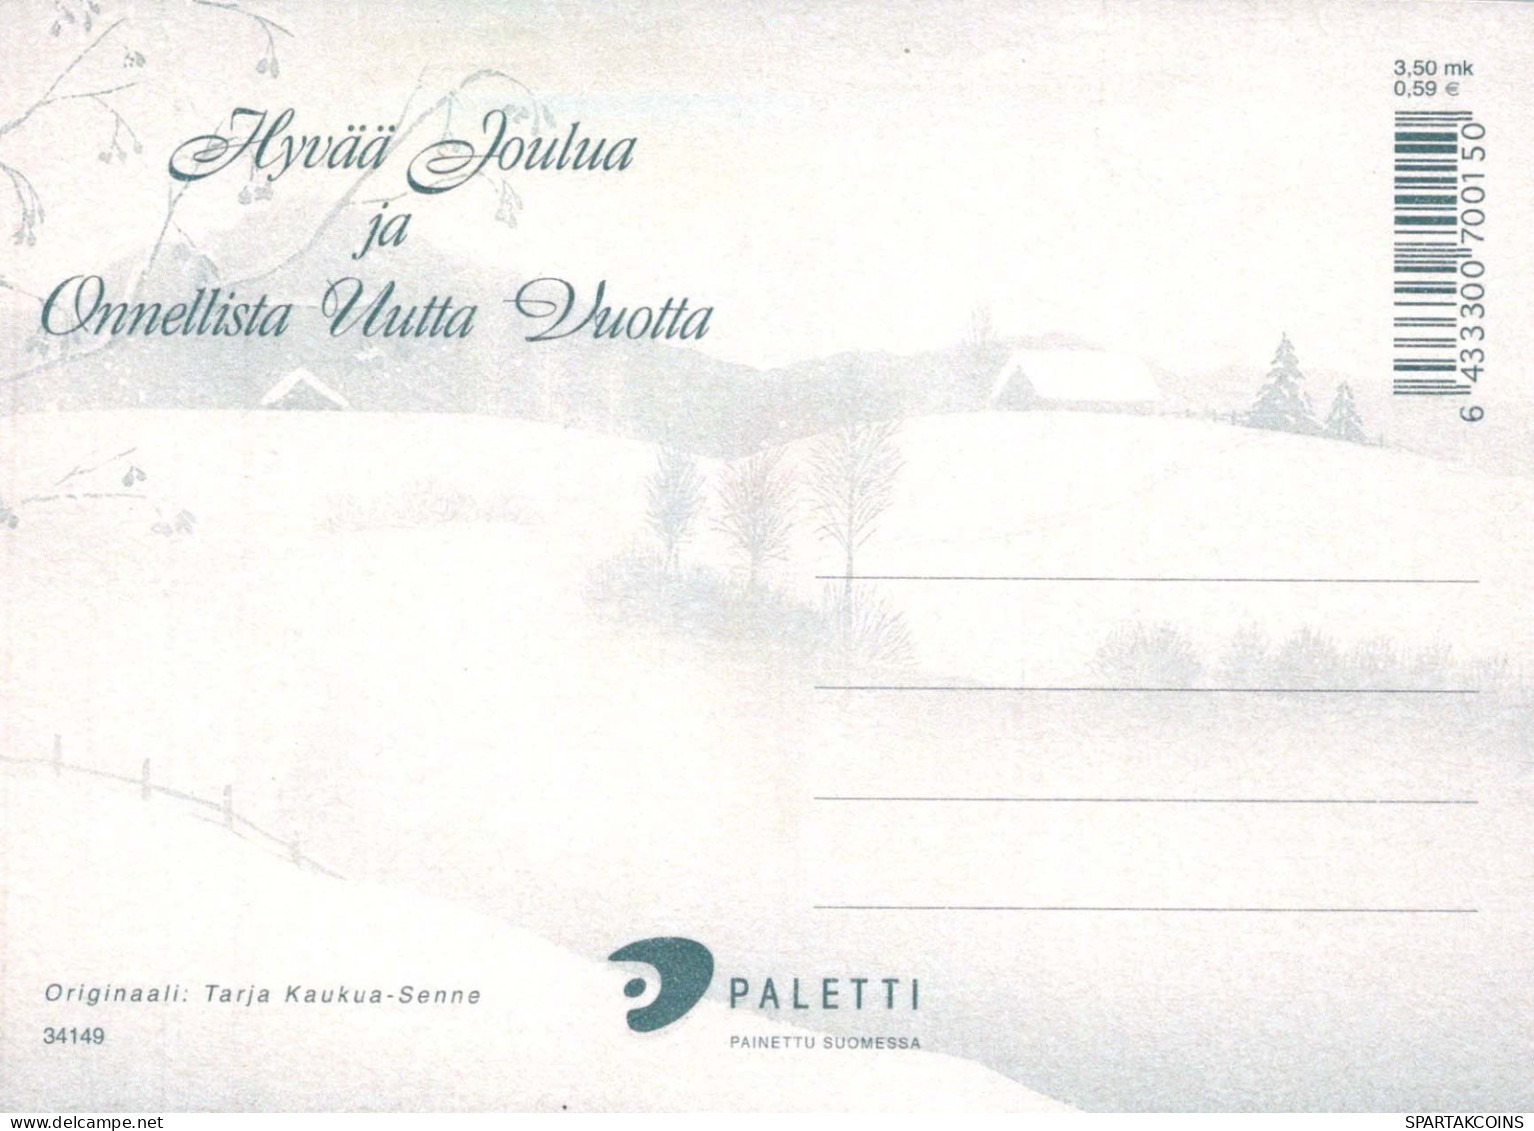 BABBO NATALE Buon Anno Natale GNOME Vintage Cartolina CPSM #PBL685.A - Santa Claus